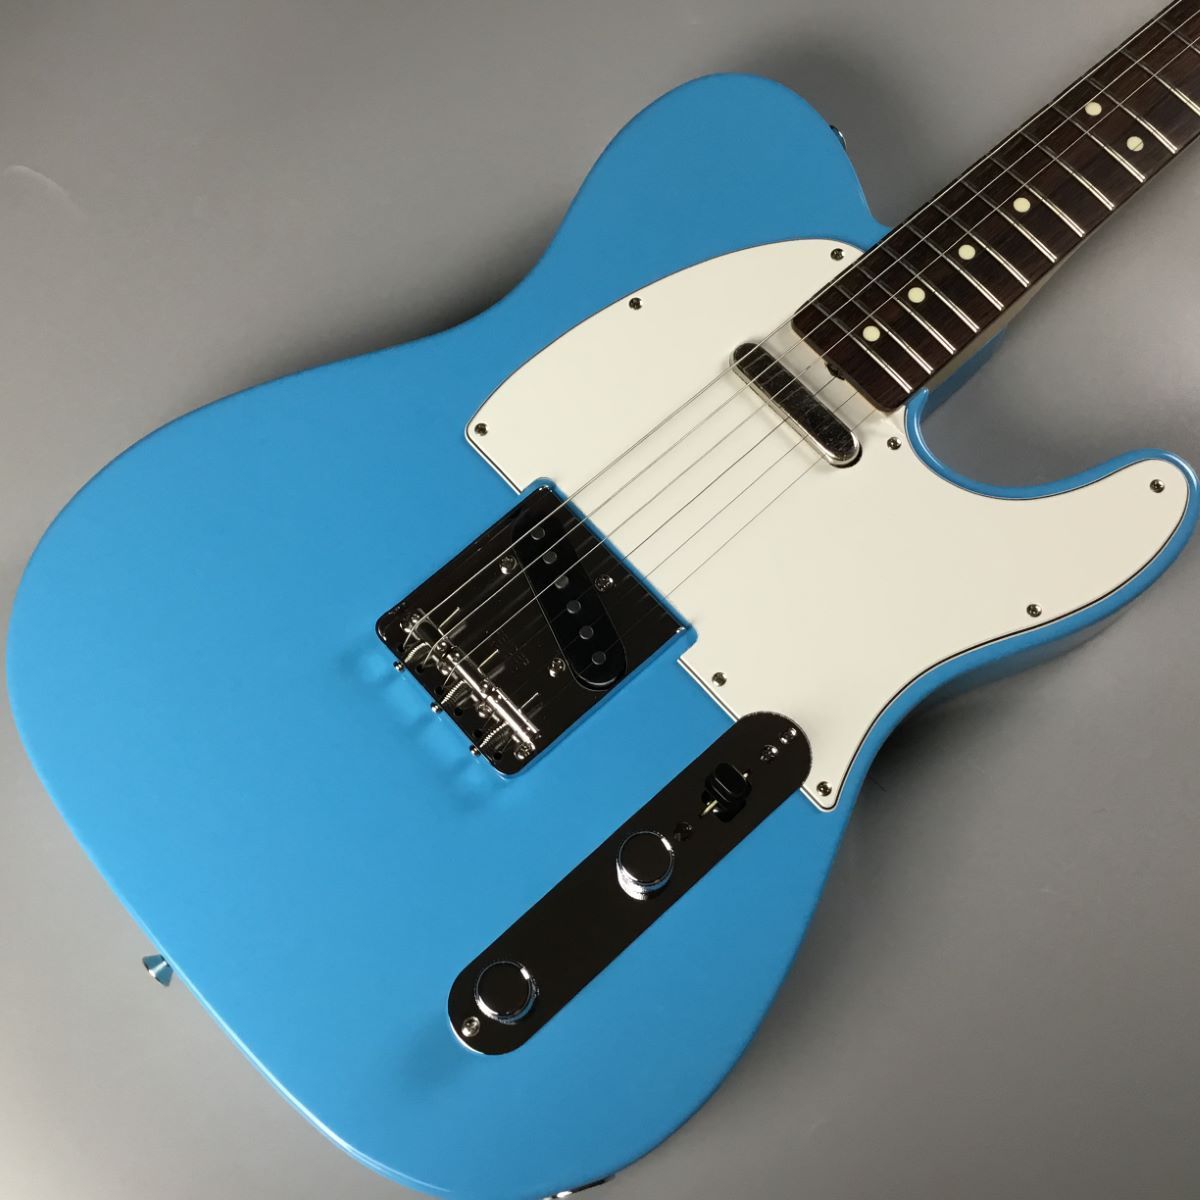 Fender Made in Japan Limited International Color Telecaster Maui